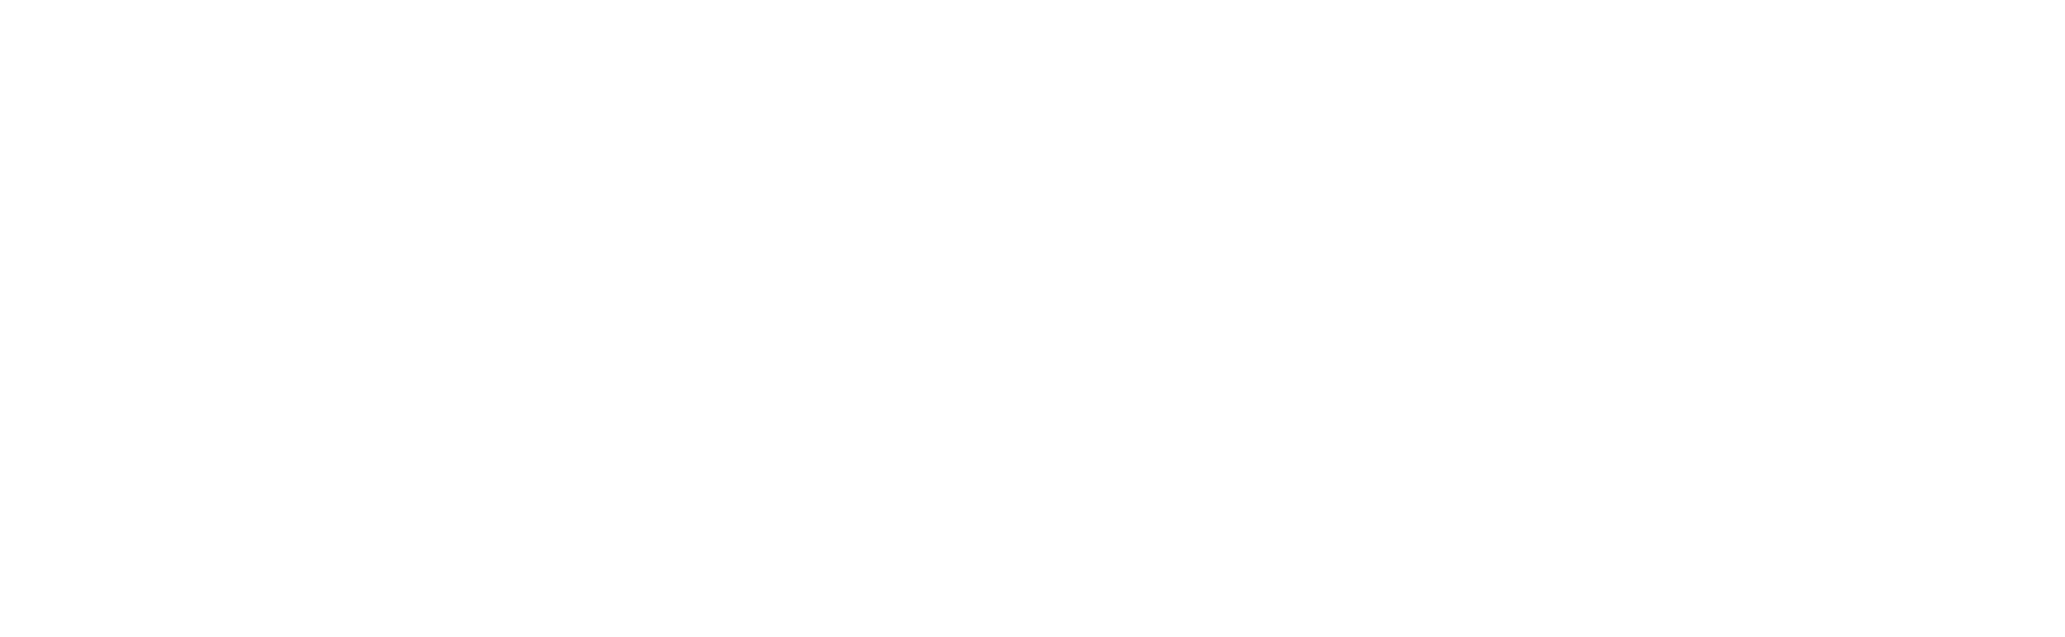 Xorcom logo blanc